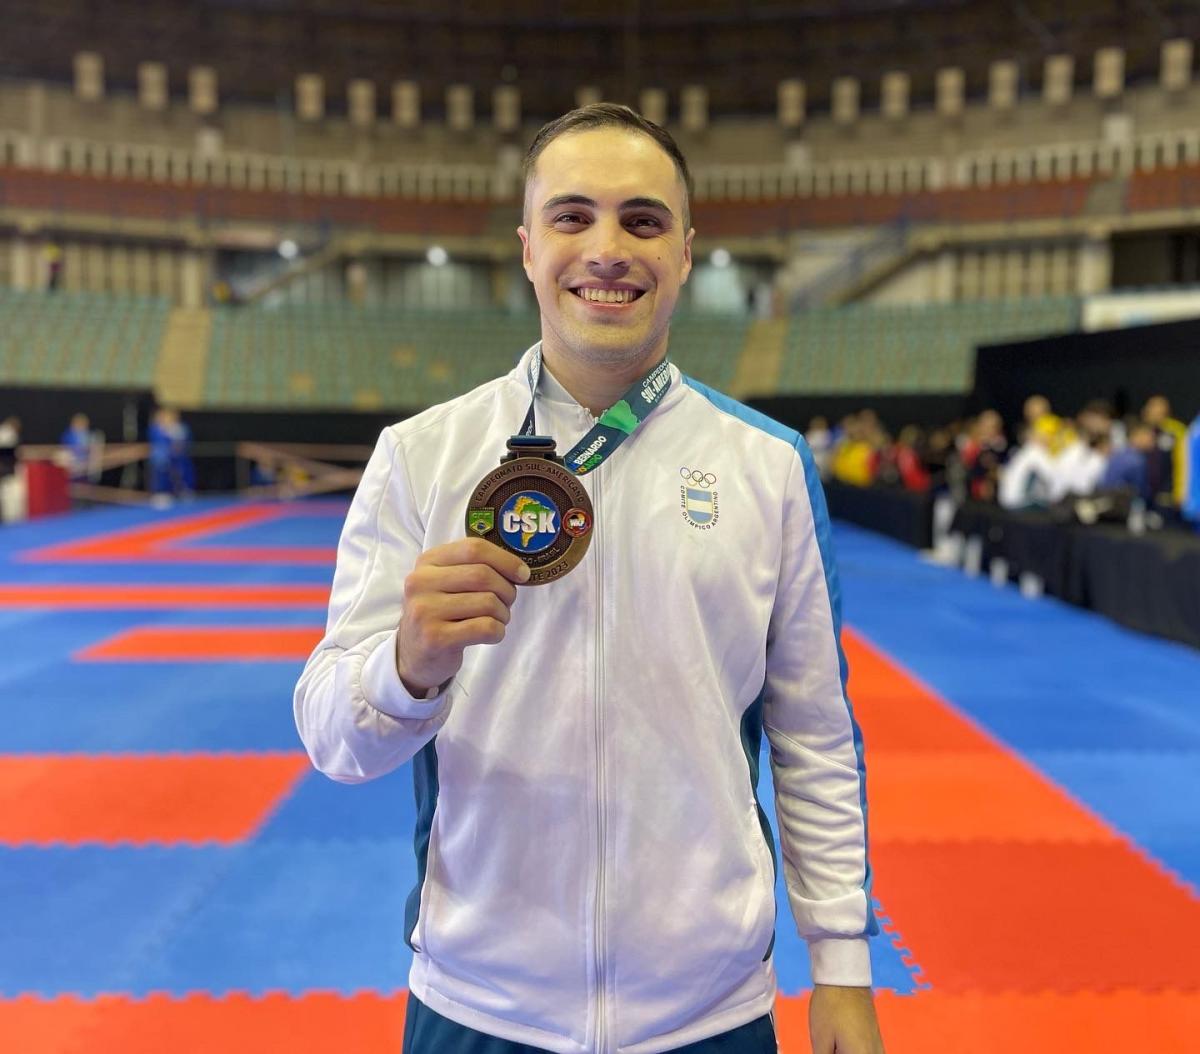 BRONCEADO. Gonzalo Navarro, con la medalla obtenida en el Campeonato Sudamericano de este año.